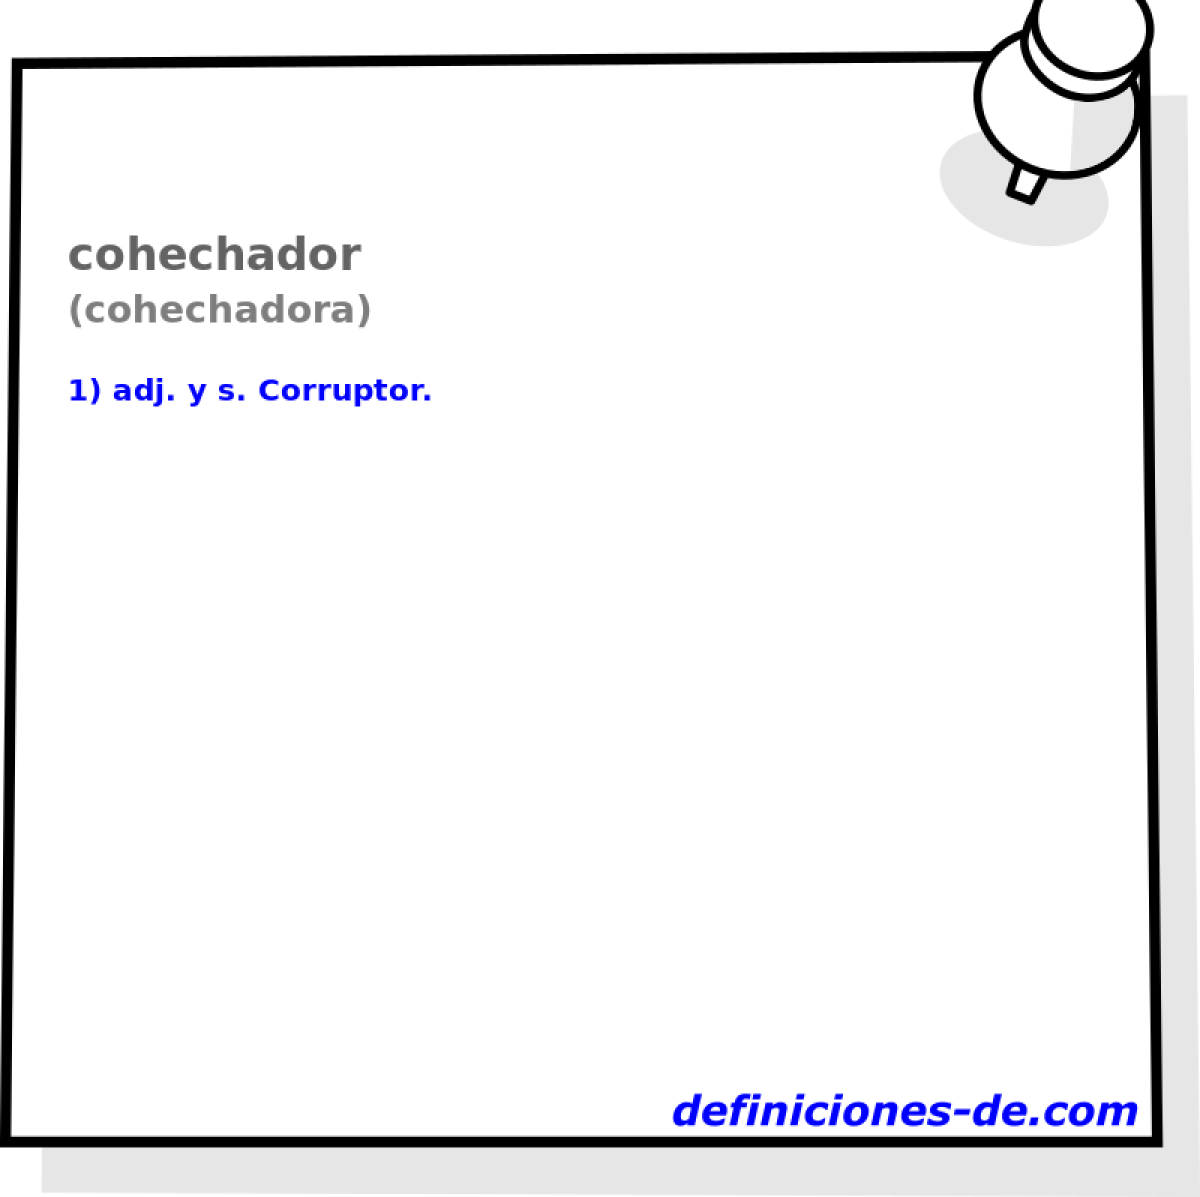 cohechador (cohechadora)